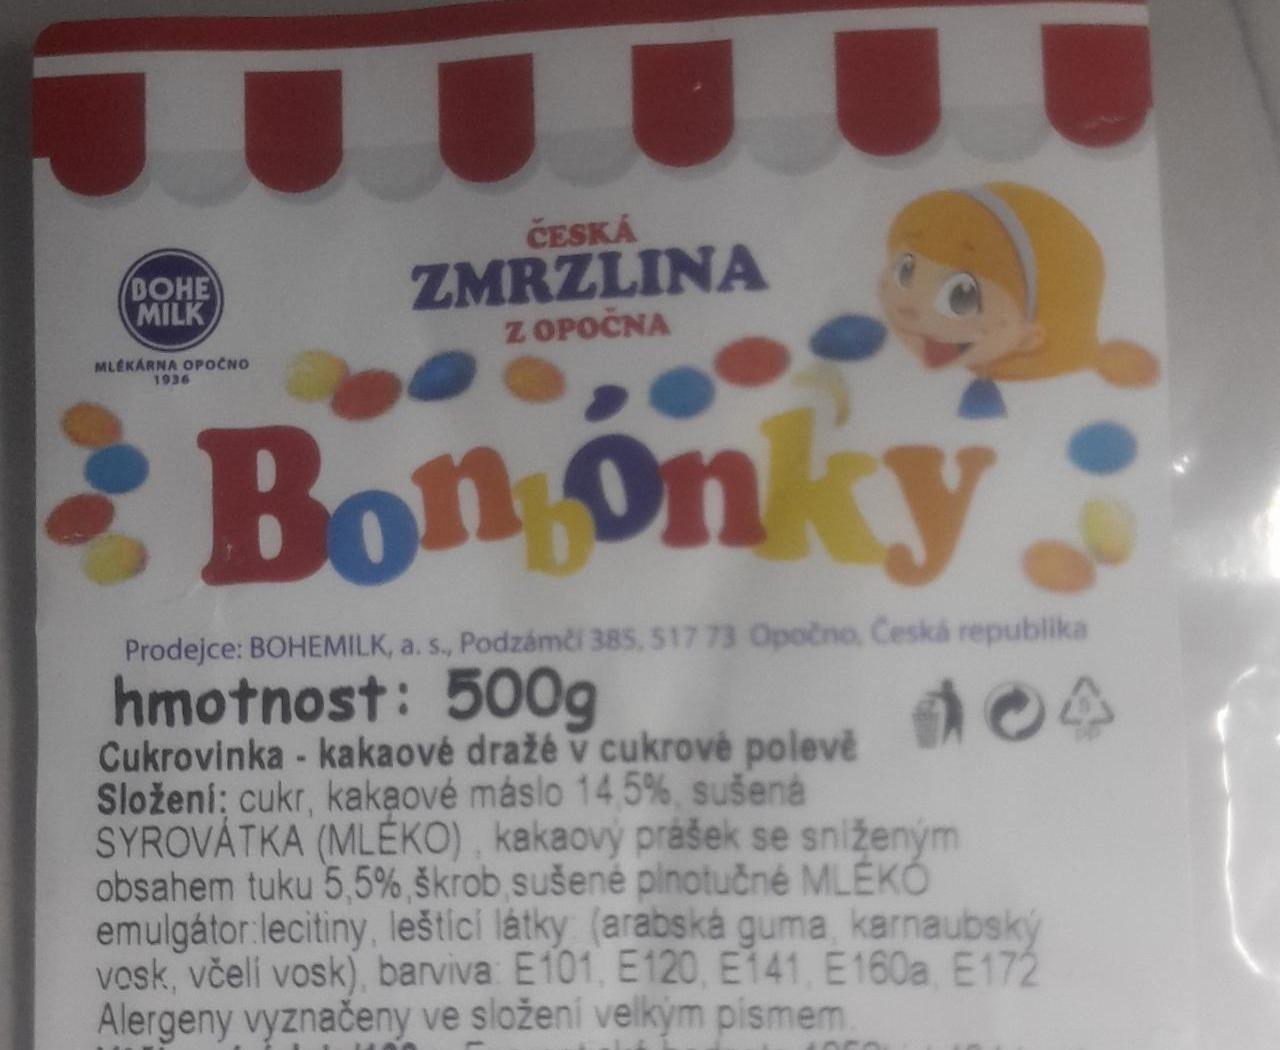 Fotografie - česká zmrzlina z Opočna Bonbonky Bohemilk